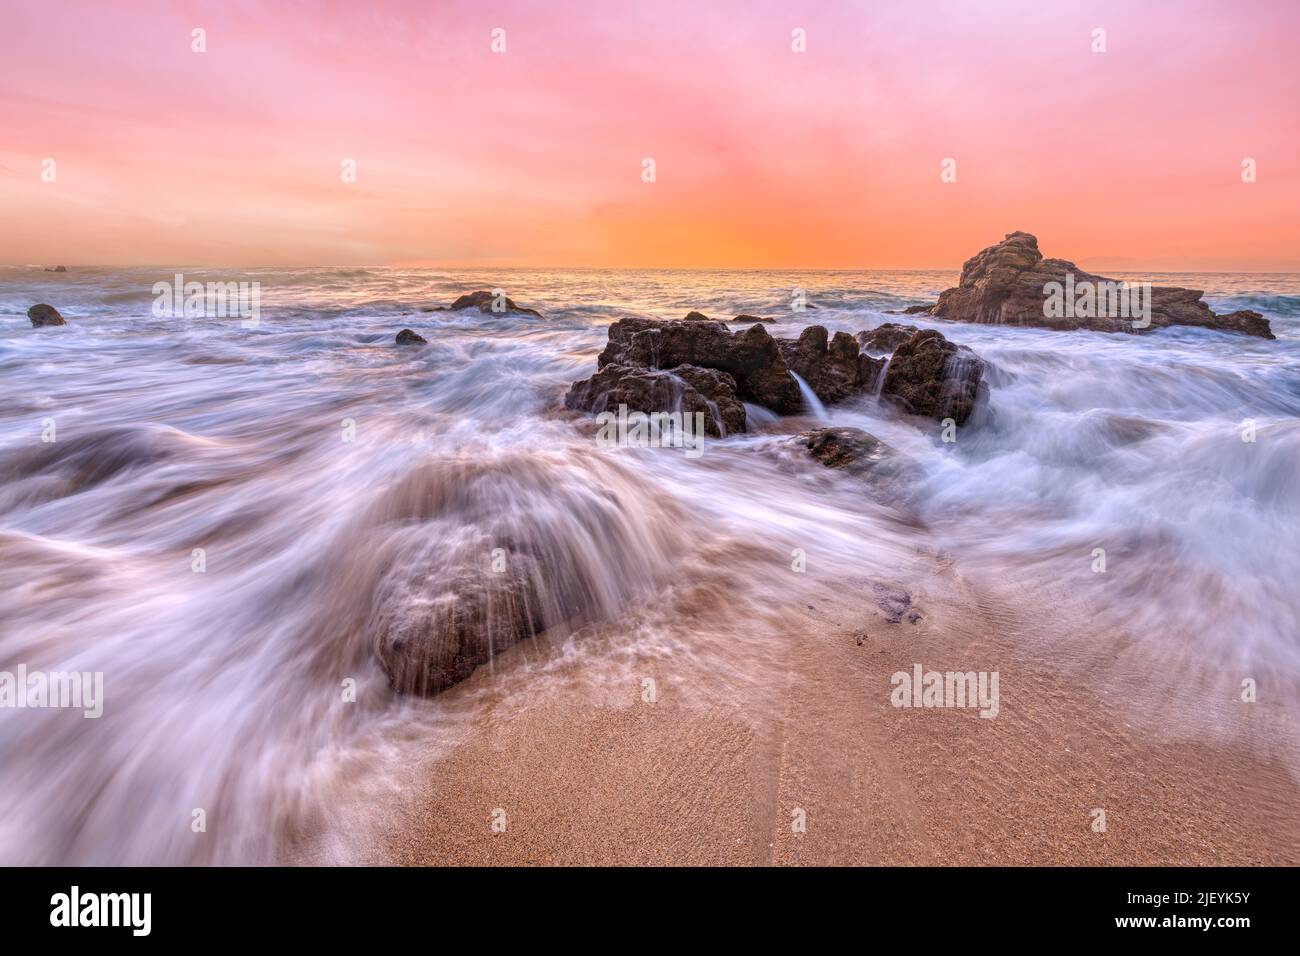 El agua fluye a través de las rocas del océano en la resolución alta del amanecer Foto de stock